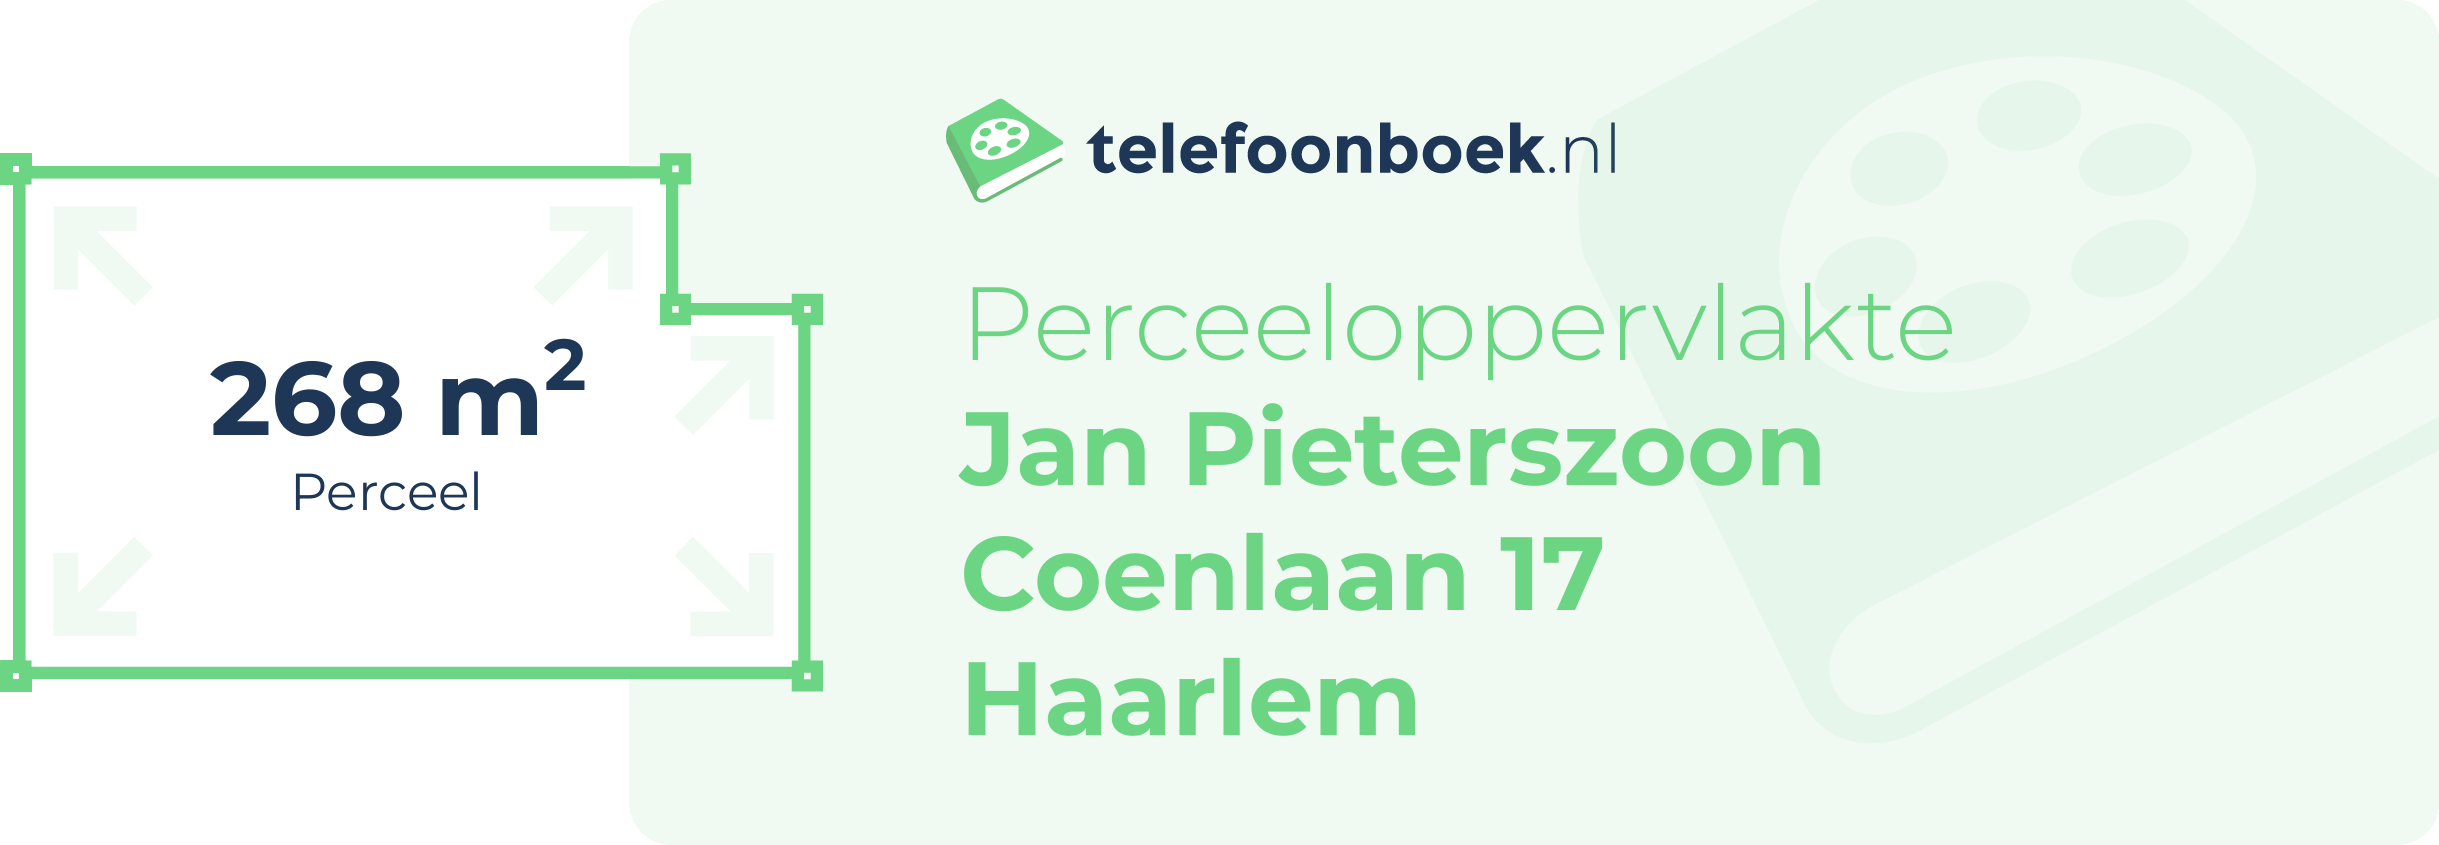 Perceeloppervlakte Jan Pieterszoon Coenlaan 17 Haarlem